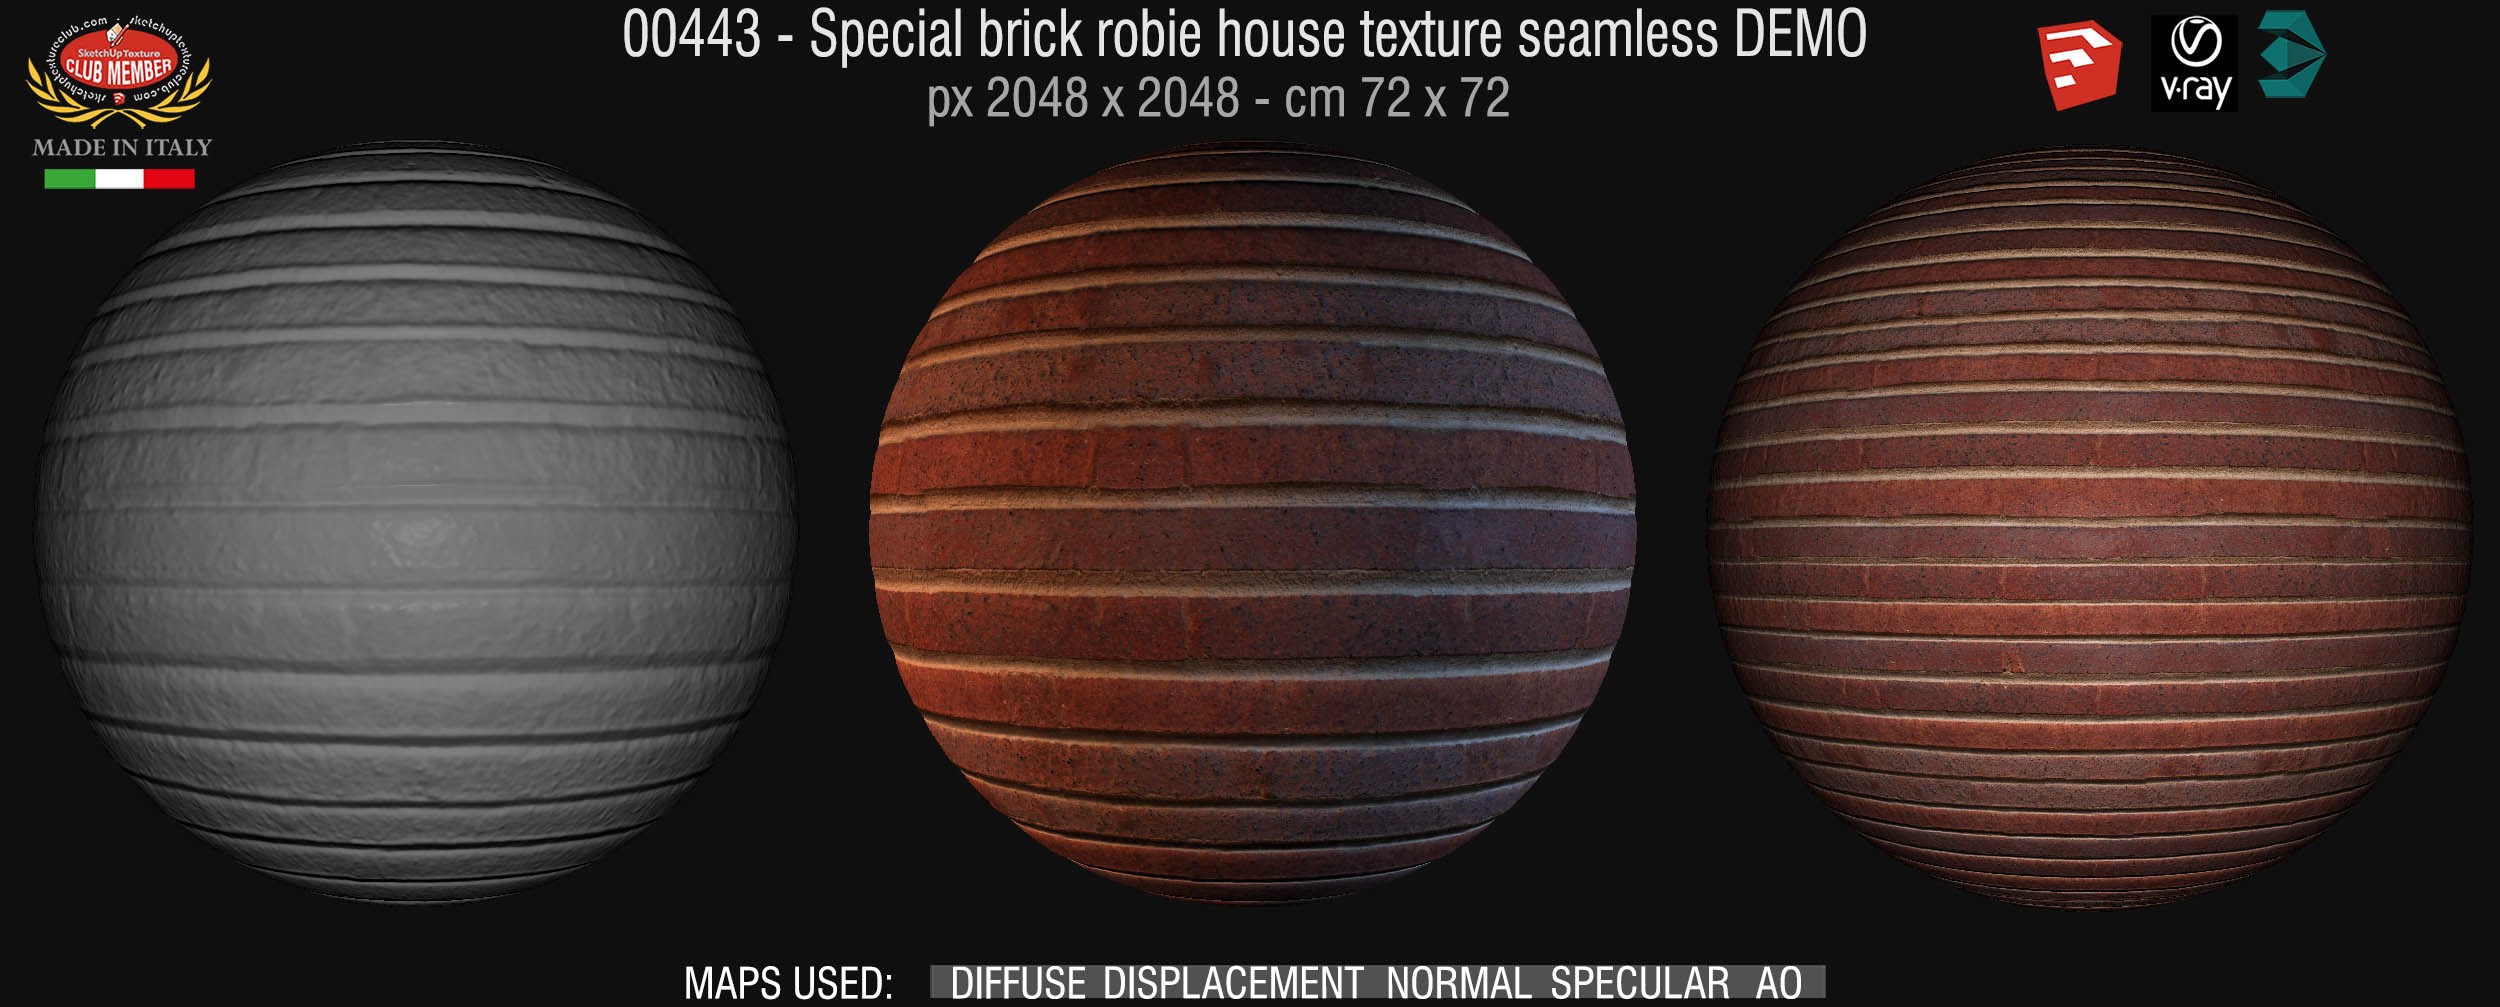 00443 Special brick robie house texture seamless + maps DEMO